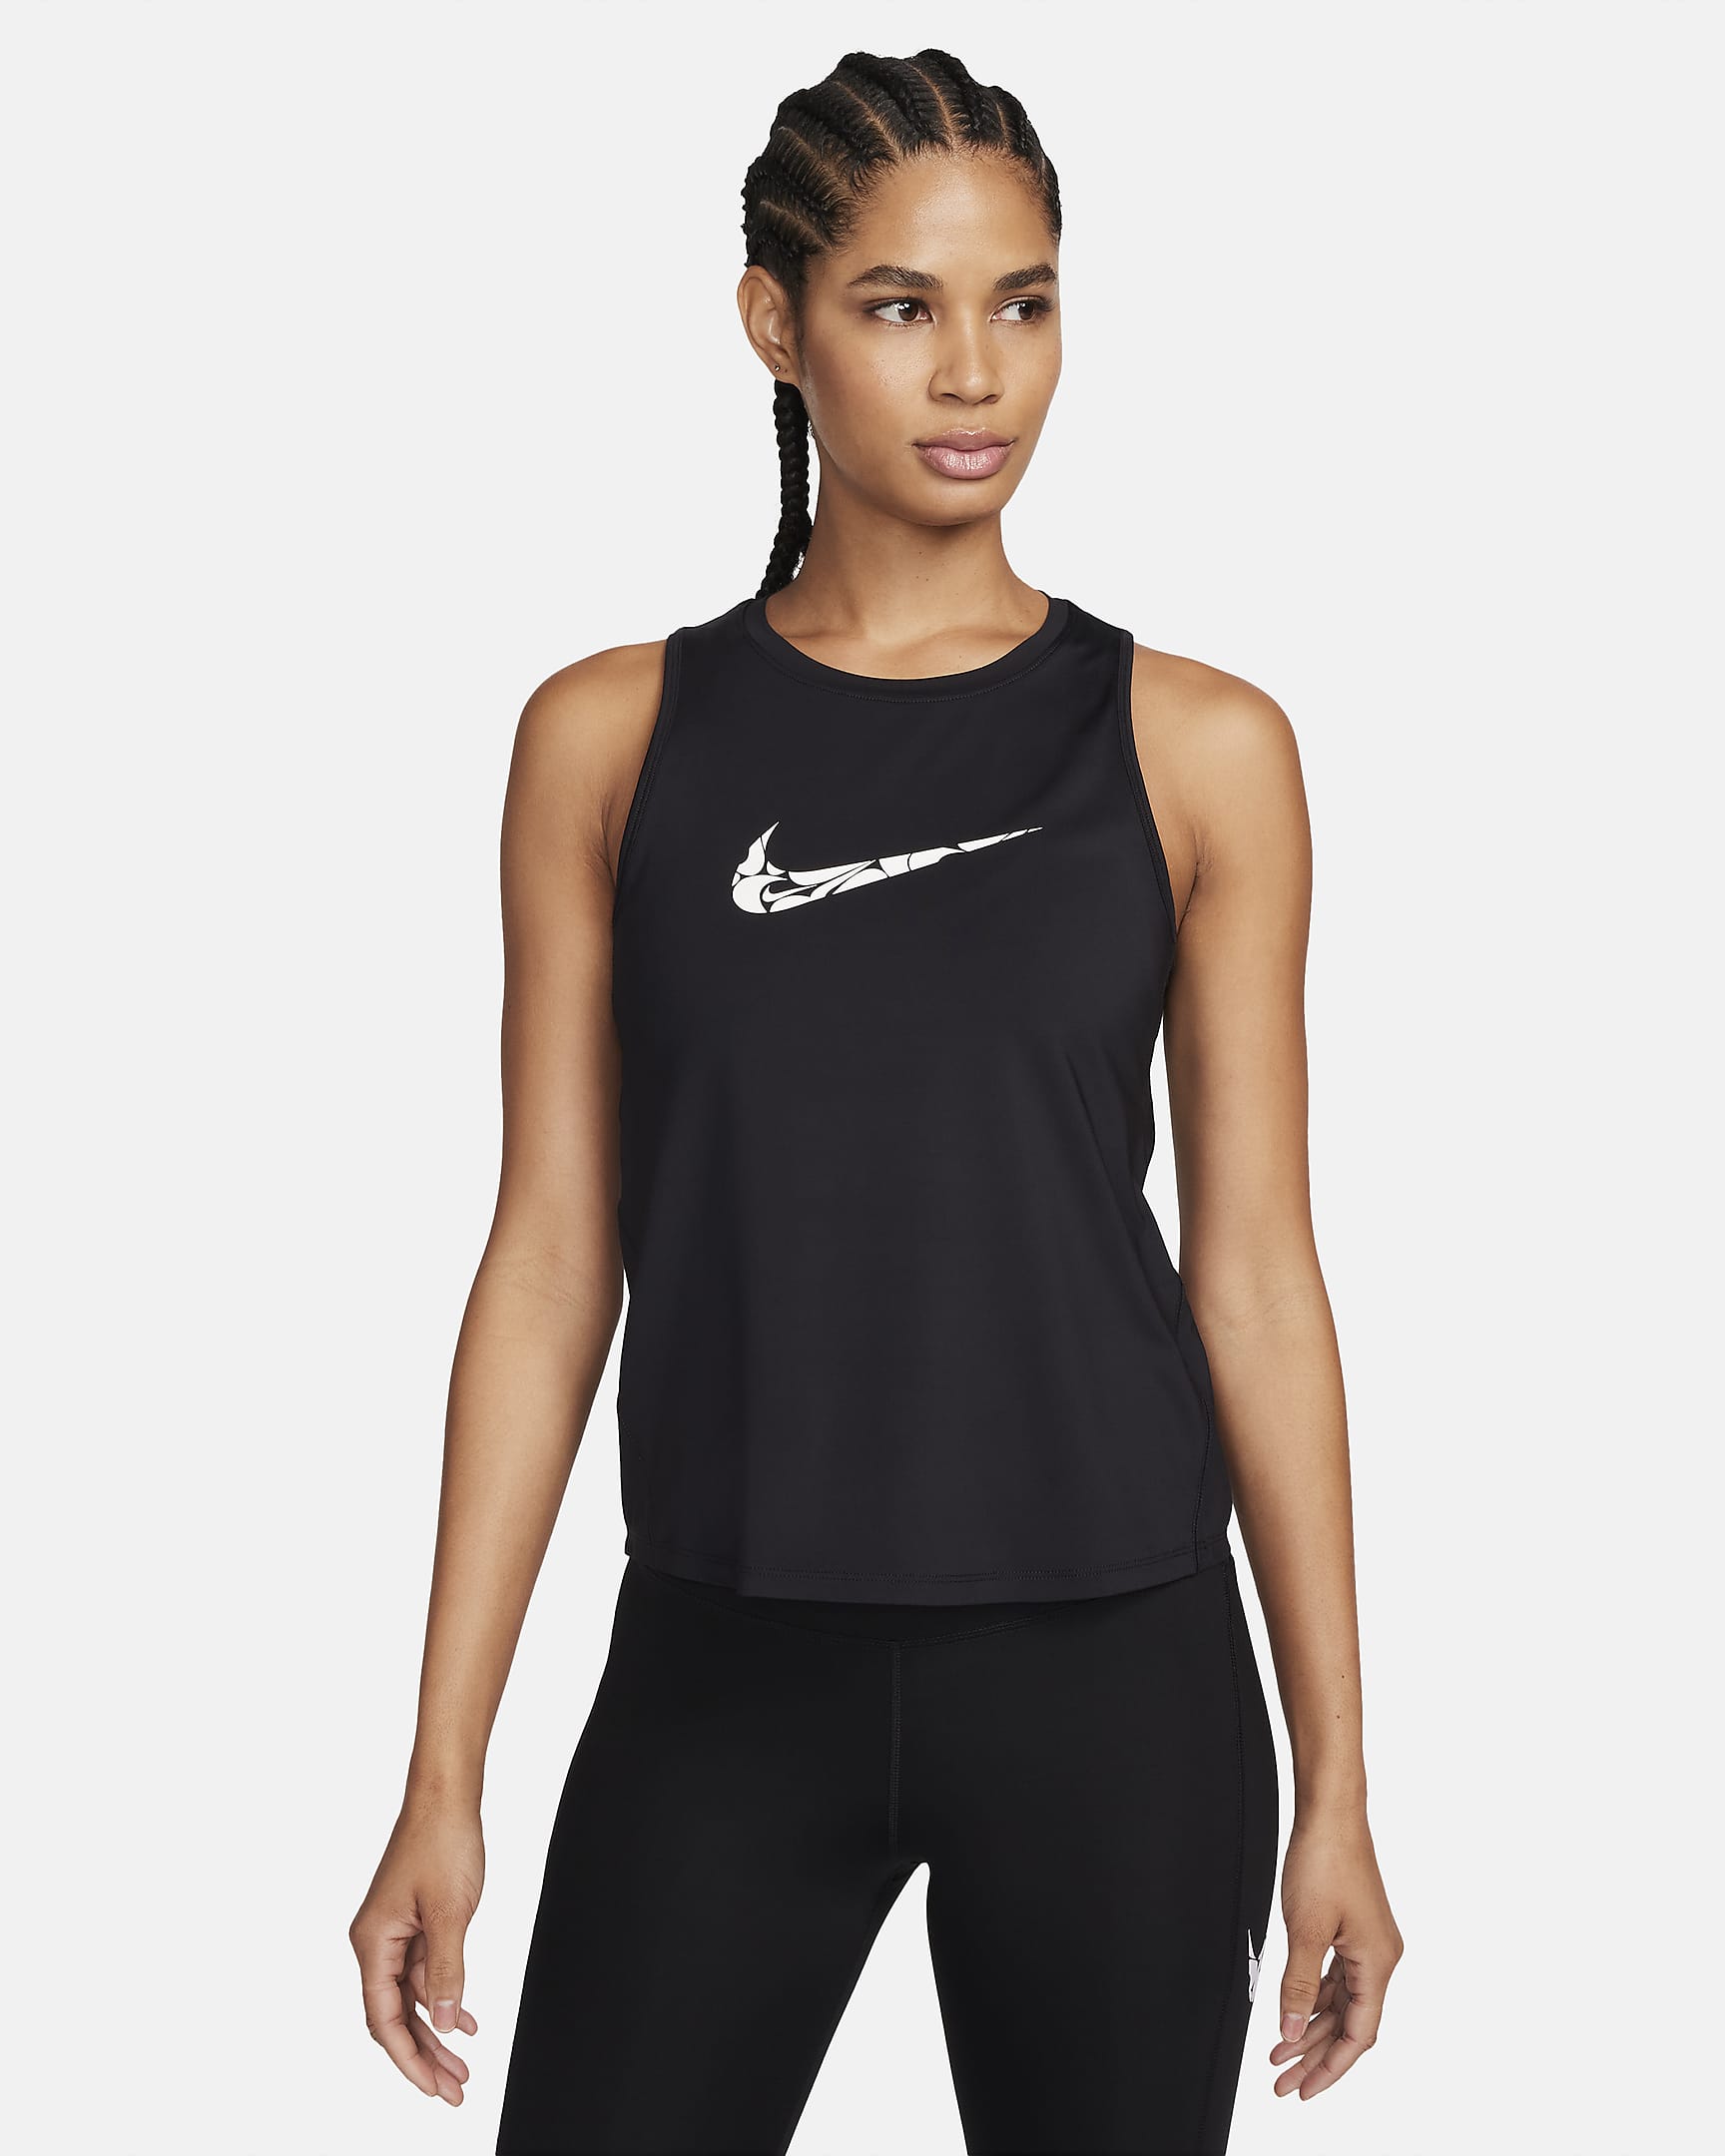 Nike One Women's Graphic Running Tank Top. Nike ZA